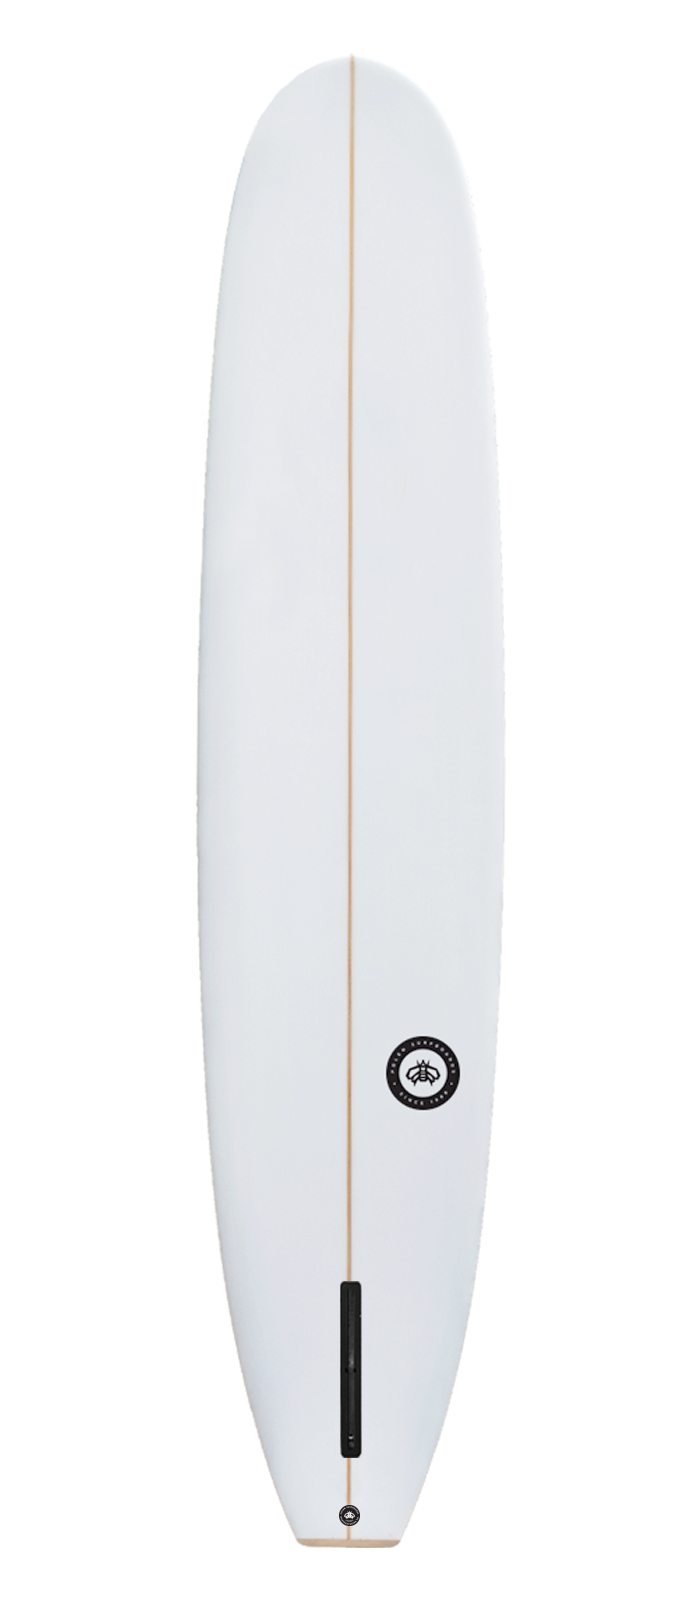 GRACE surfboard model bottom